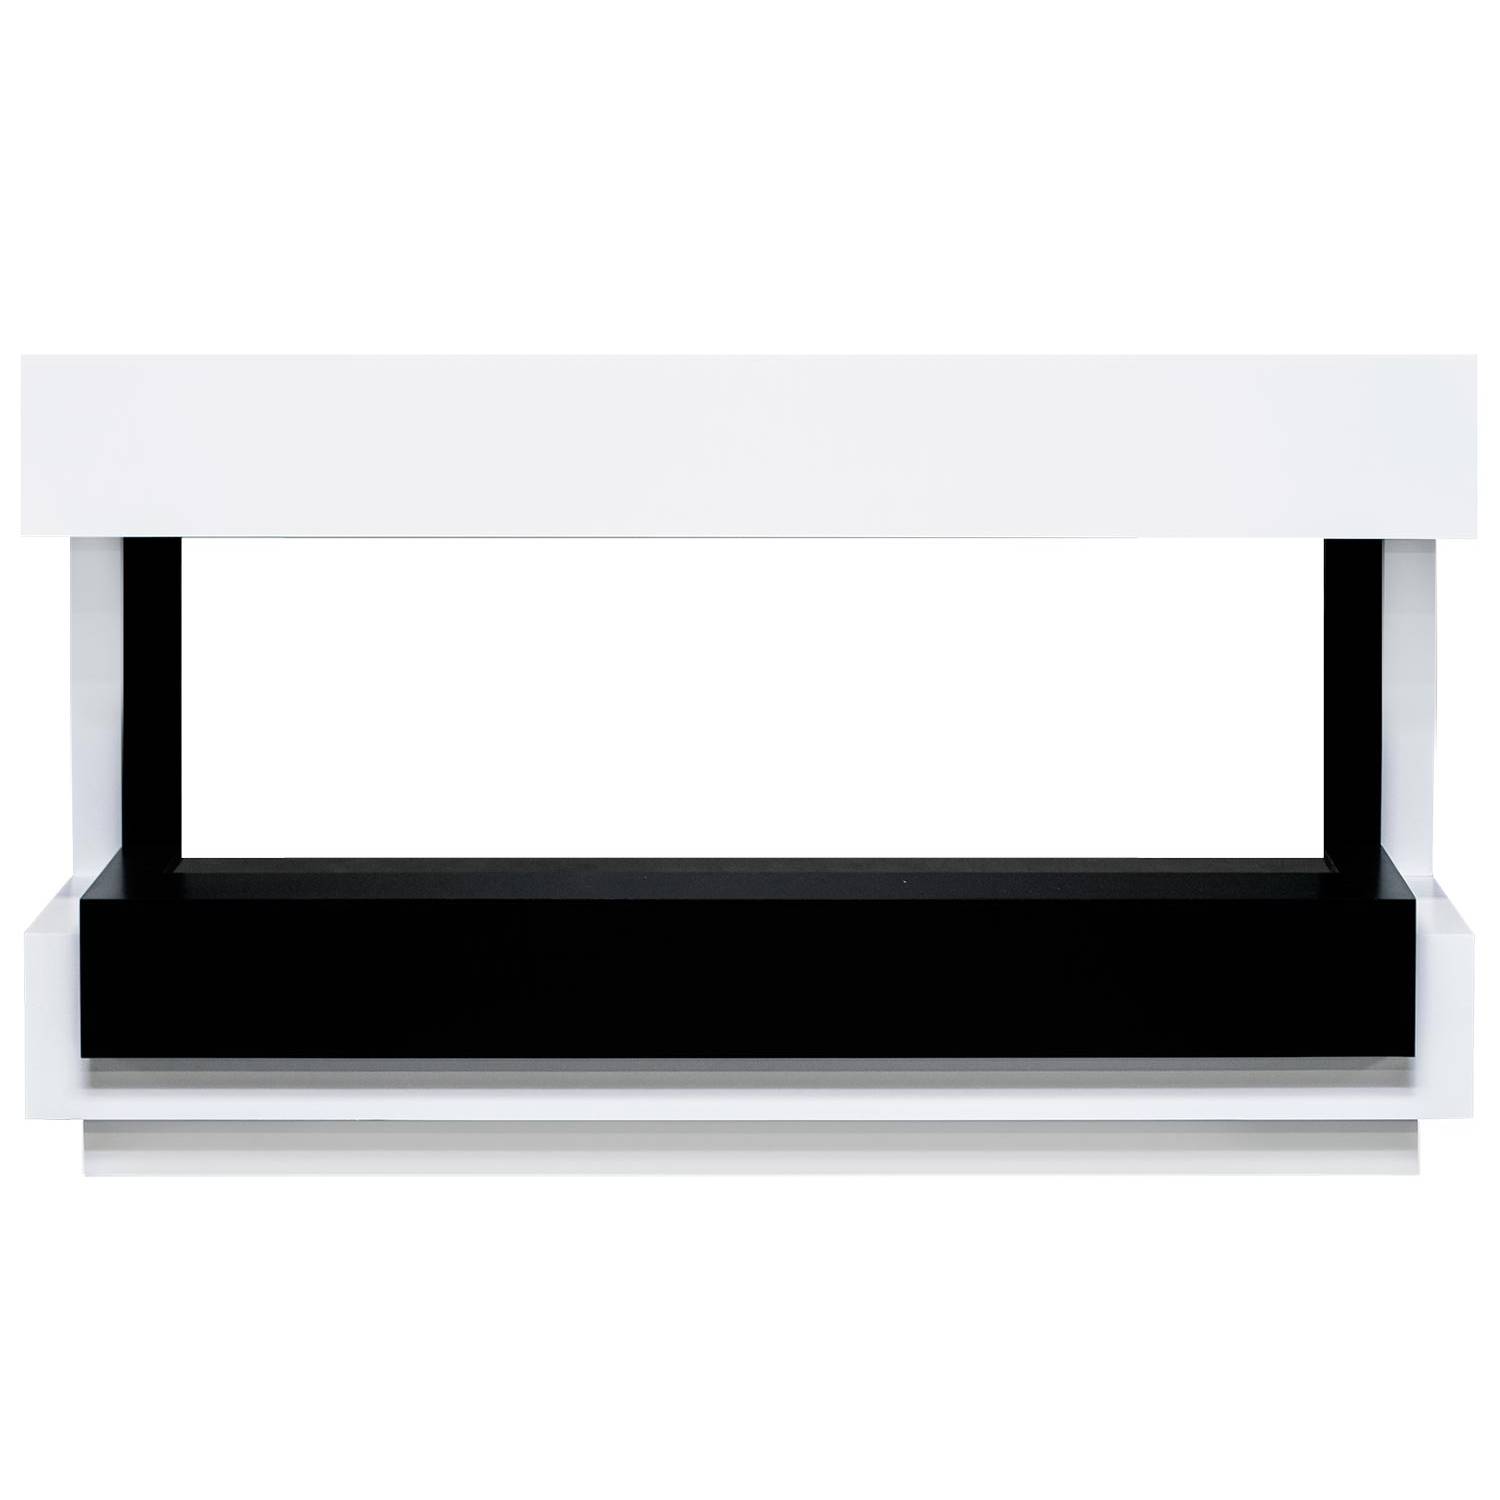 портал royal flame basel r белый с черным Портал Royal Flame Cube 50 под Astra Белый с черным